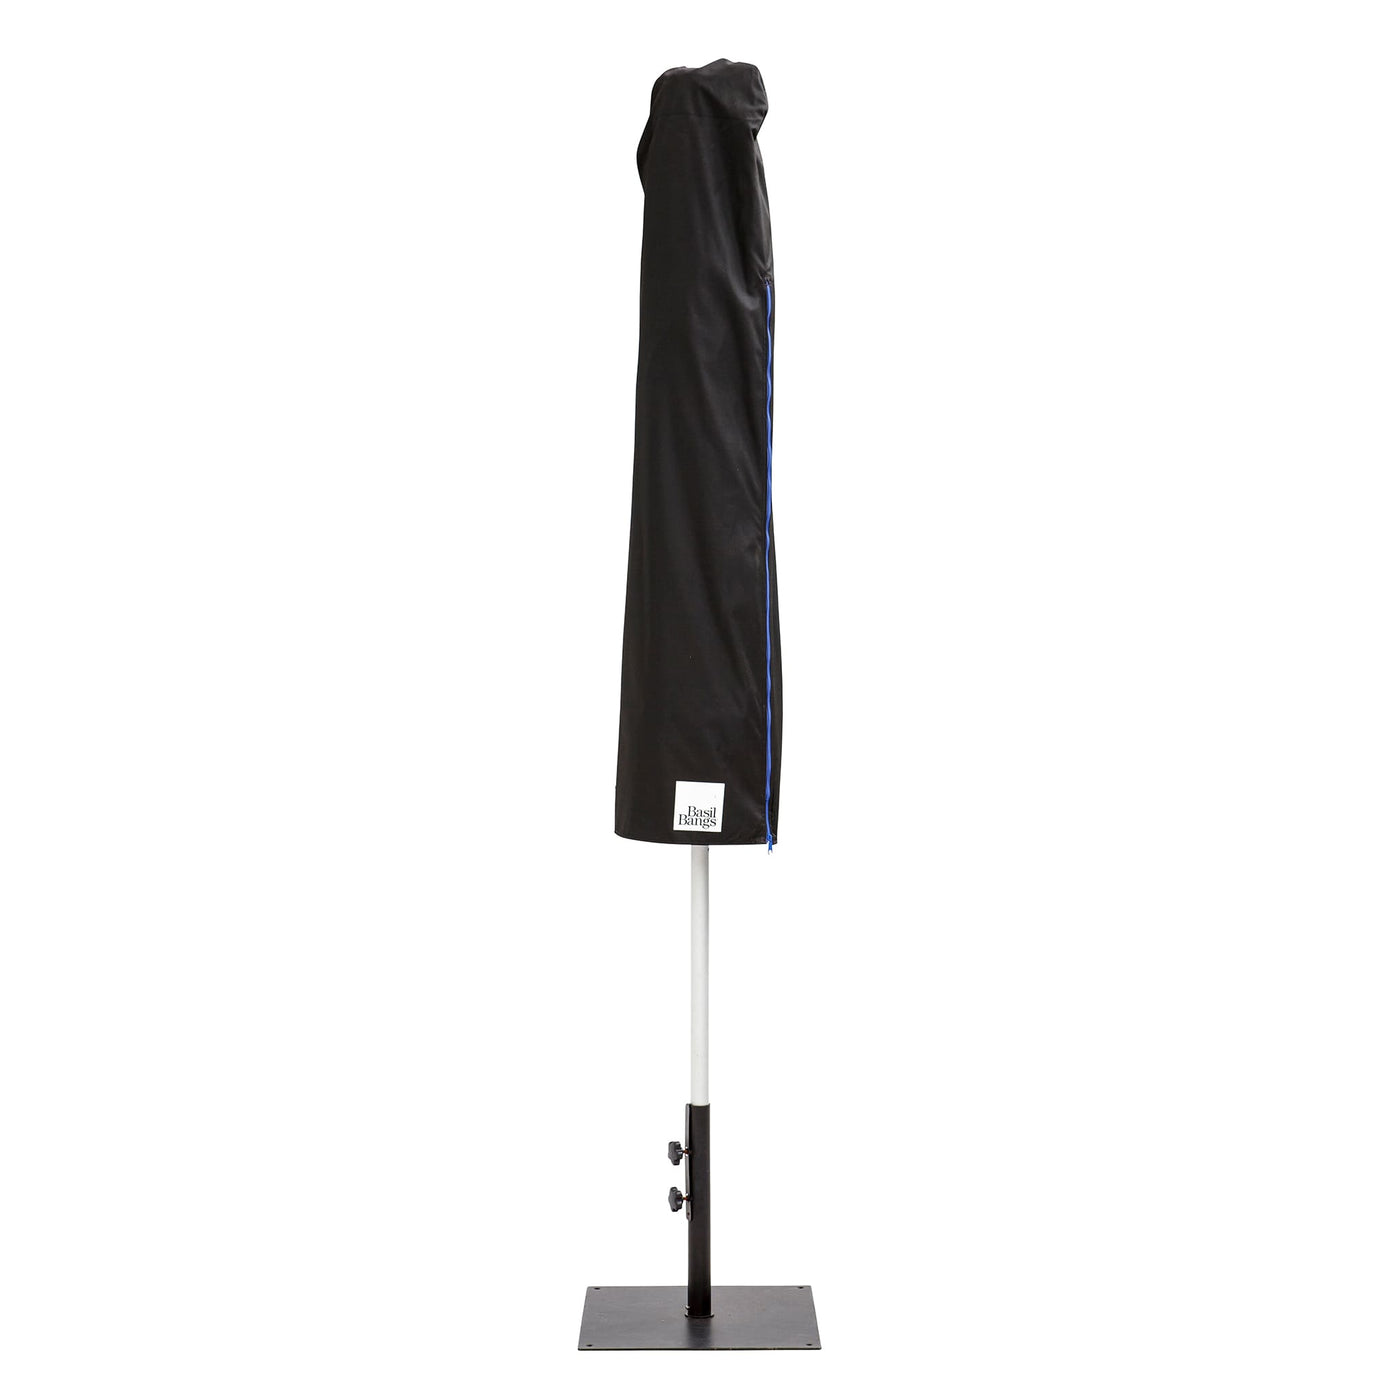 Assurez la longévité de votre parasol avec le couvre-parasol protecteur de Basil Bangs, un investissement essentiel pour maintenir votre parasol en parfait état.